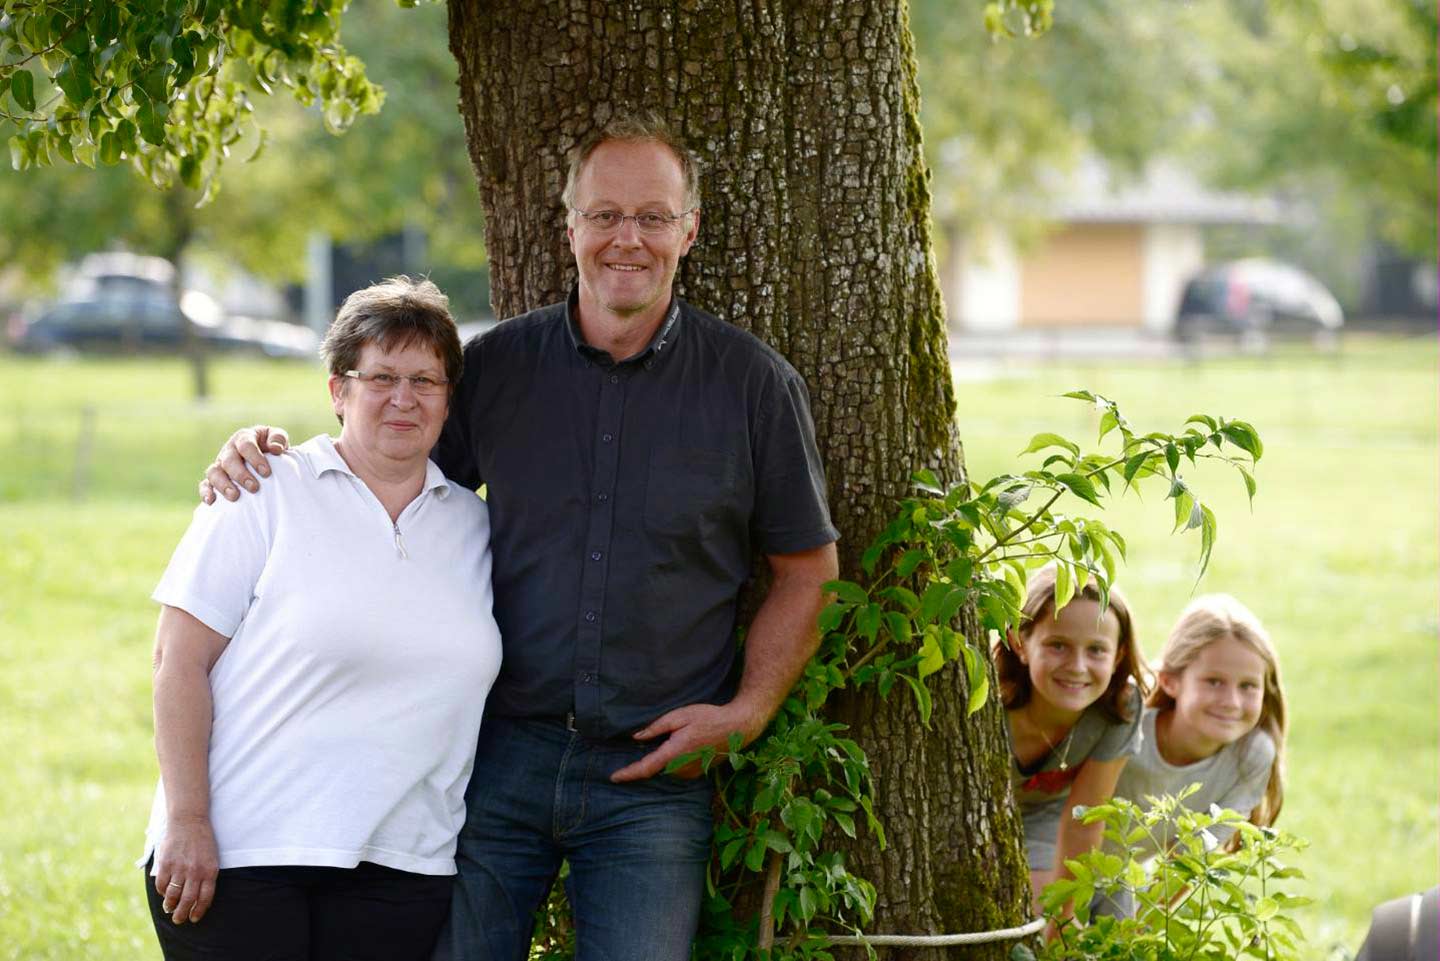 Albert Büchele Steht Mit Seiner Frau Im Arm Vor Einem Baum, Während Zwei Kinder Hinter Dem Baum Hervorschauen